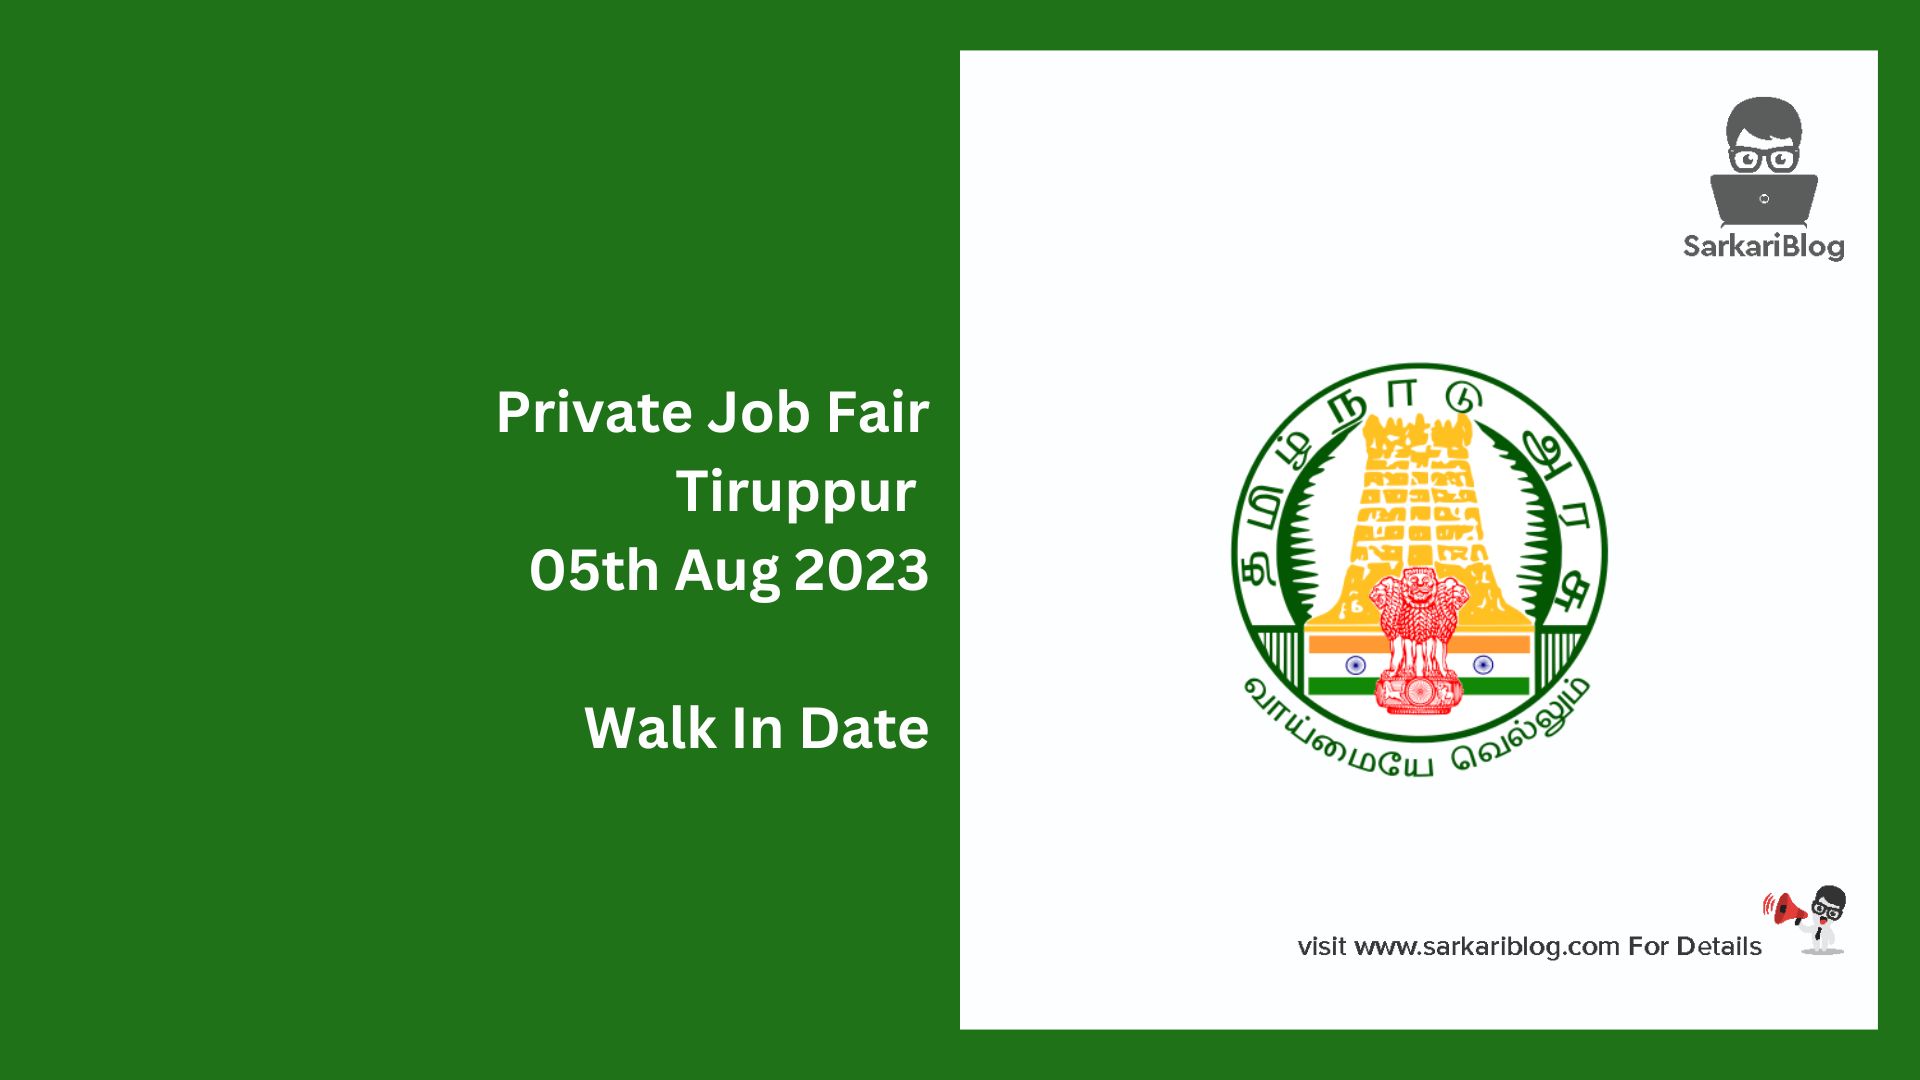 Private Job Fair Tiruppur 05th Aug 2023